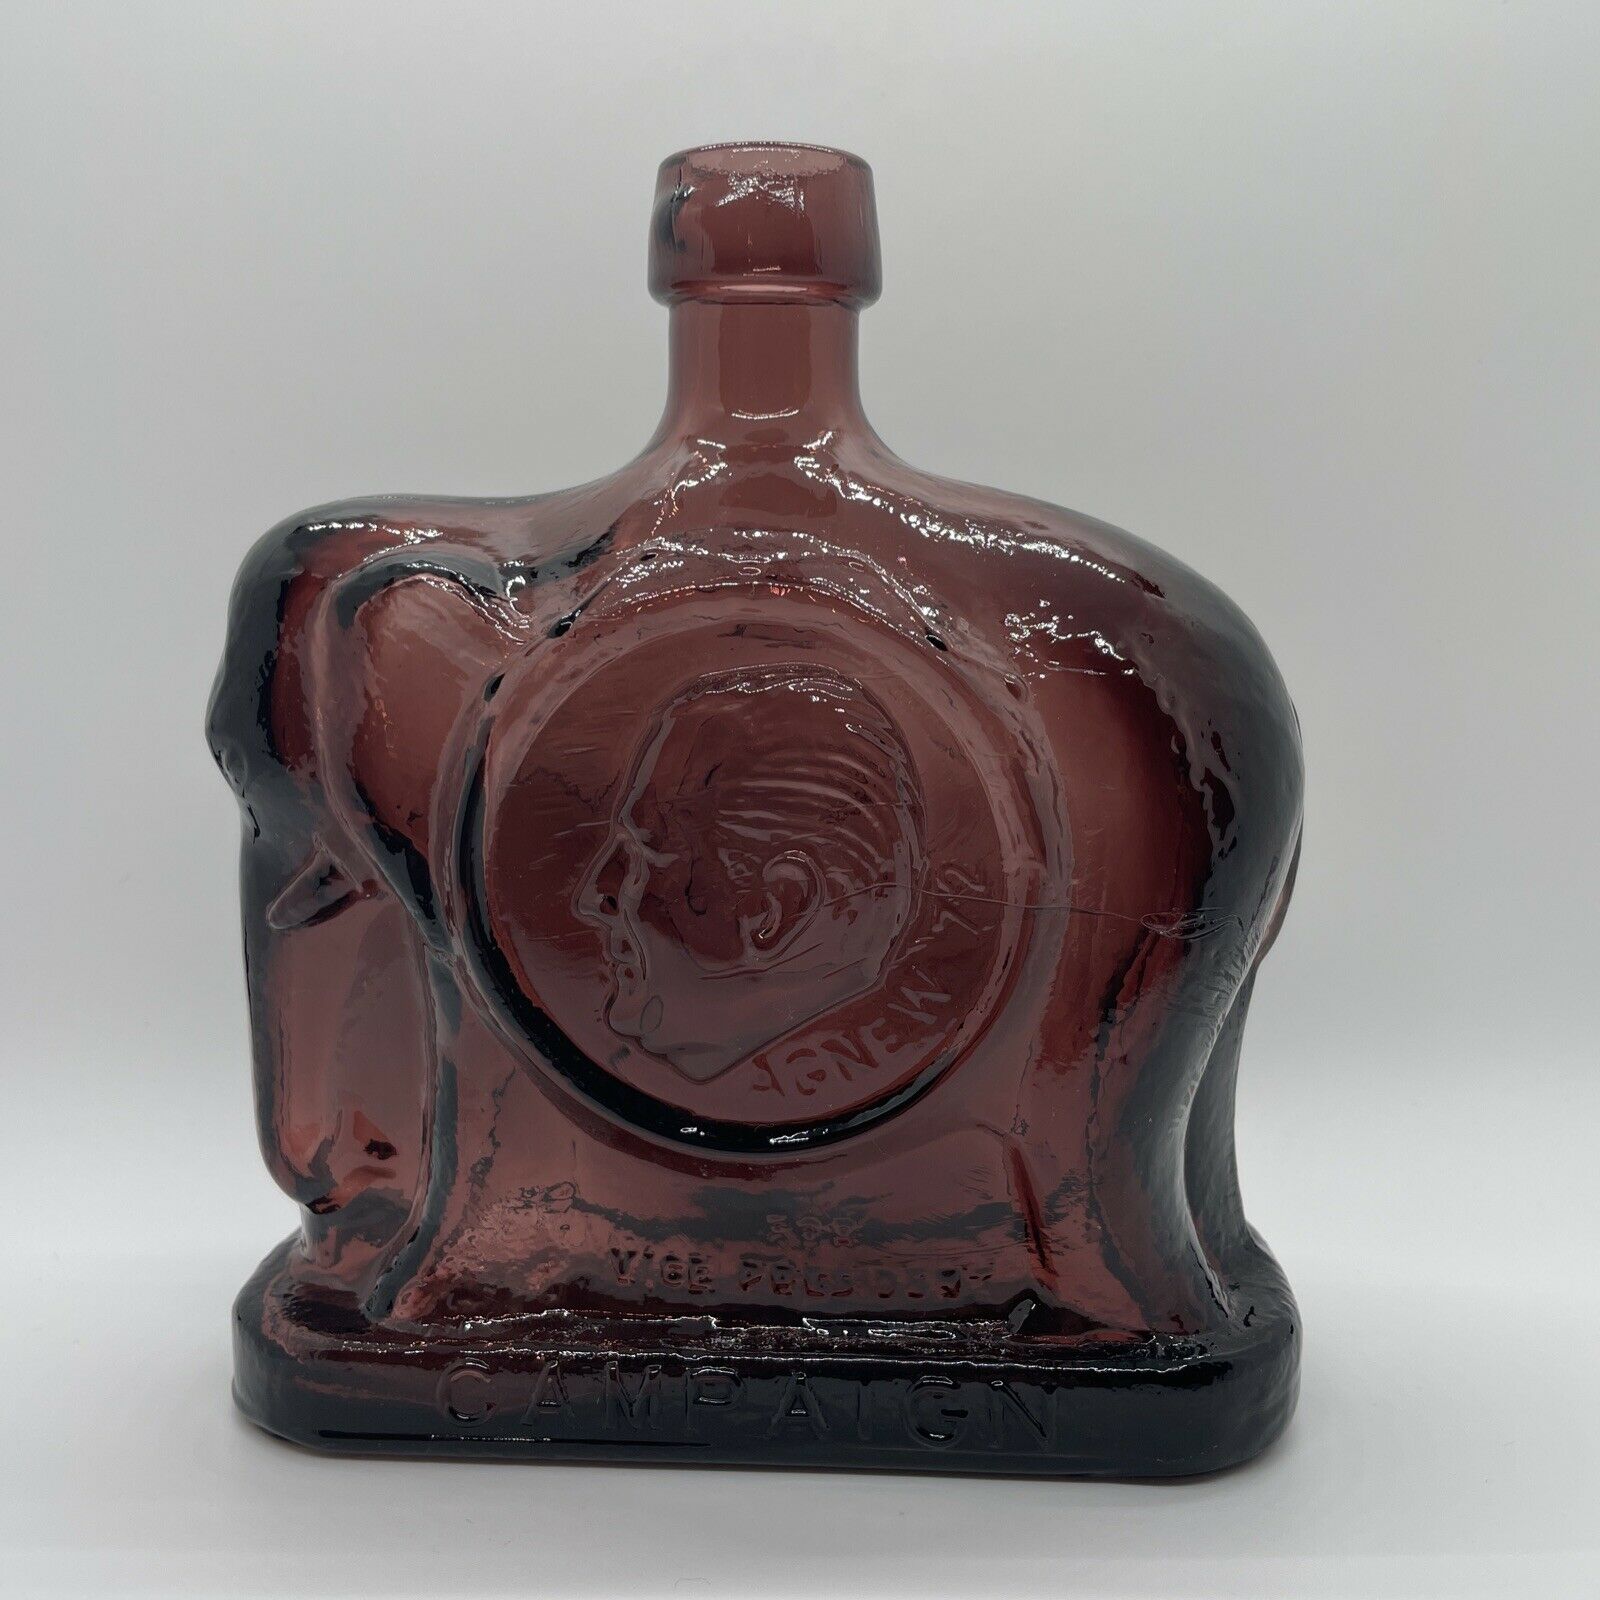 Wheaton Glass First Edition Commemorative Bottles - Nixon/agnew Republican